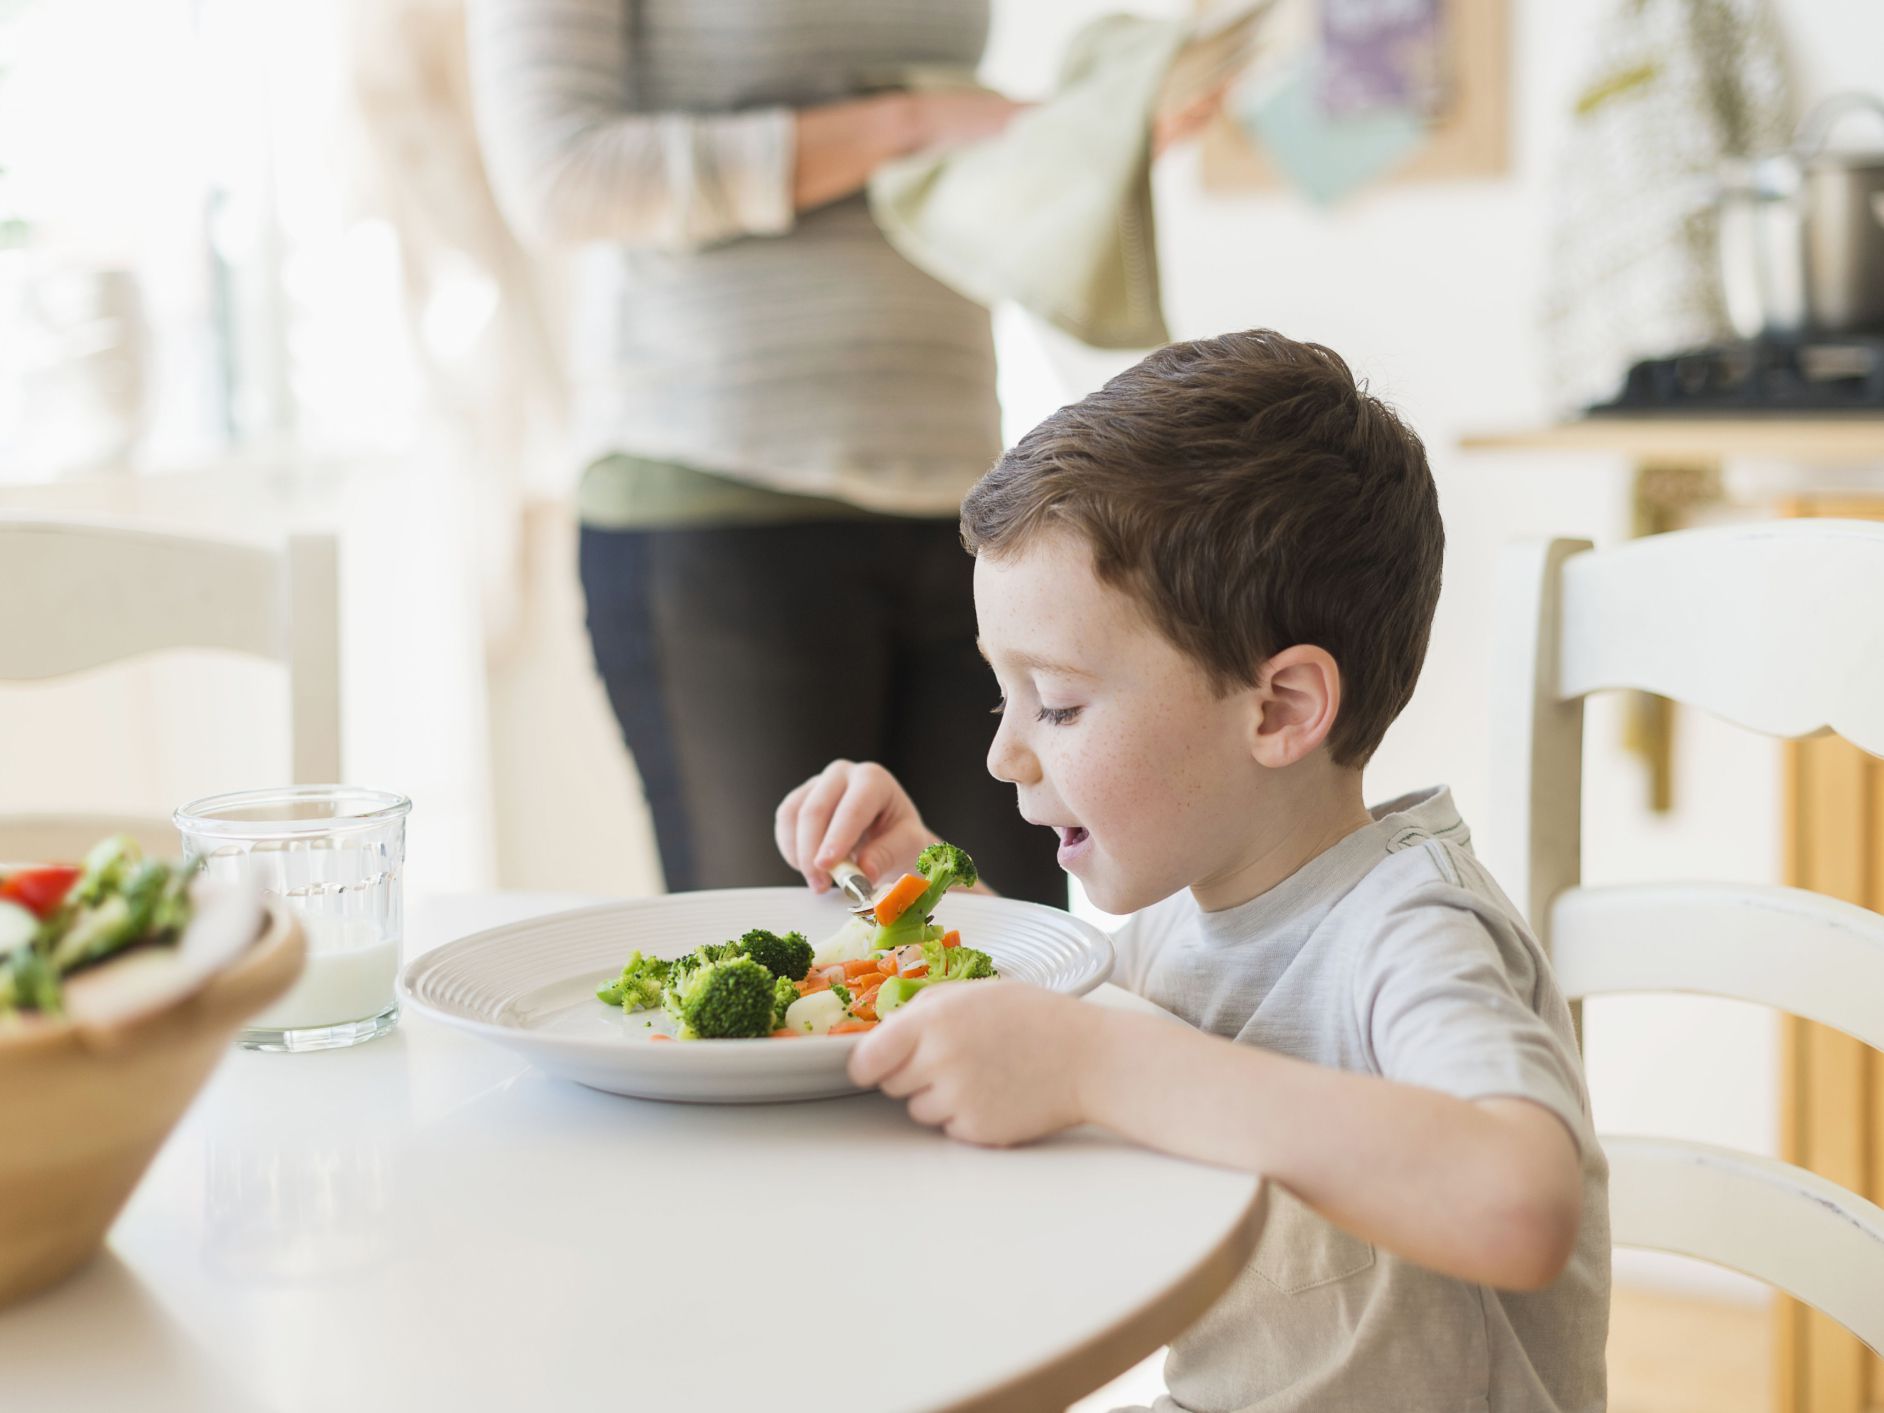 4 loại rau này không nên cho trẻ ăn nhiều vì có thể gây kích ứng hoặc khó chịu đường tiêu hóa - Ảnh 2.